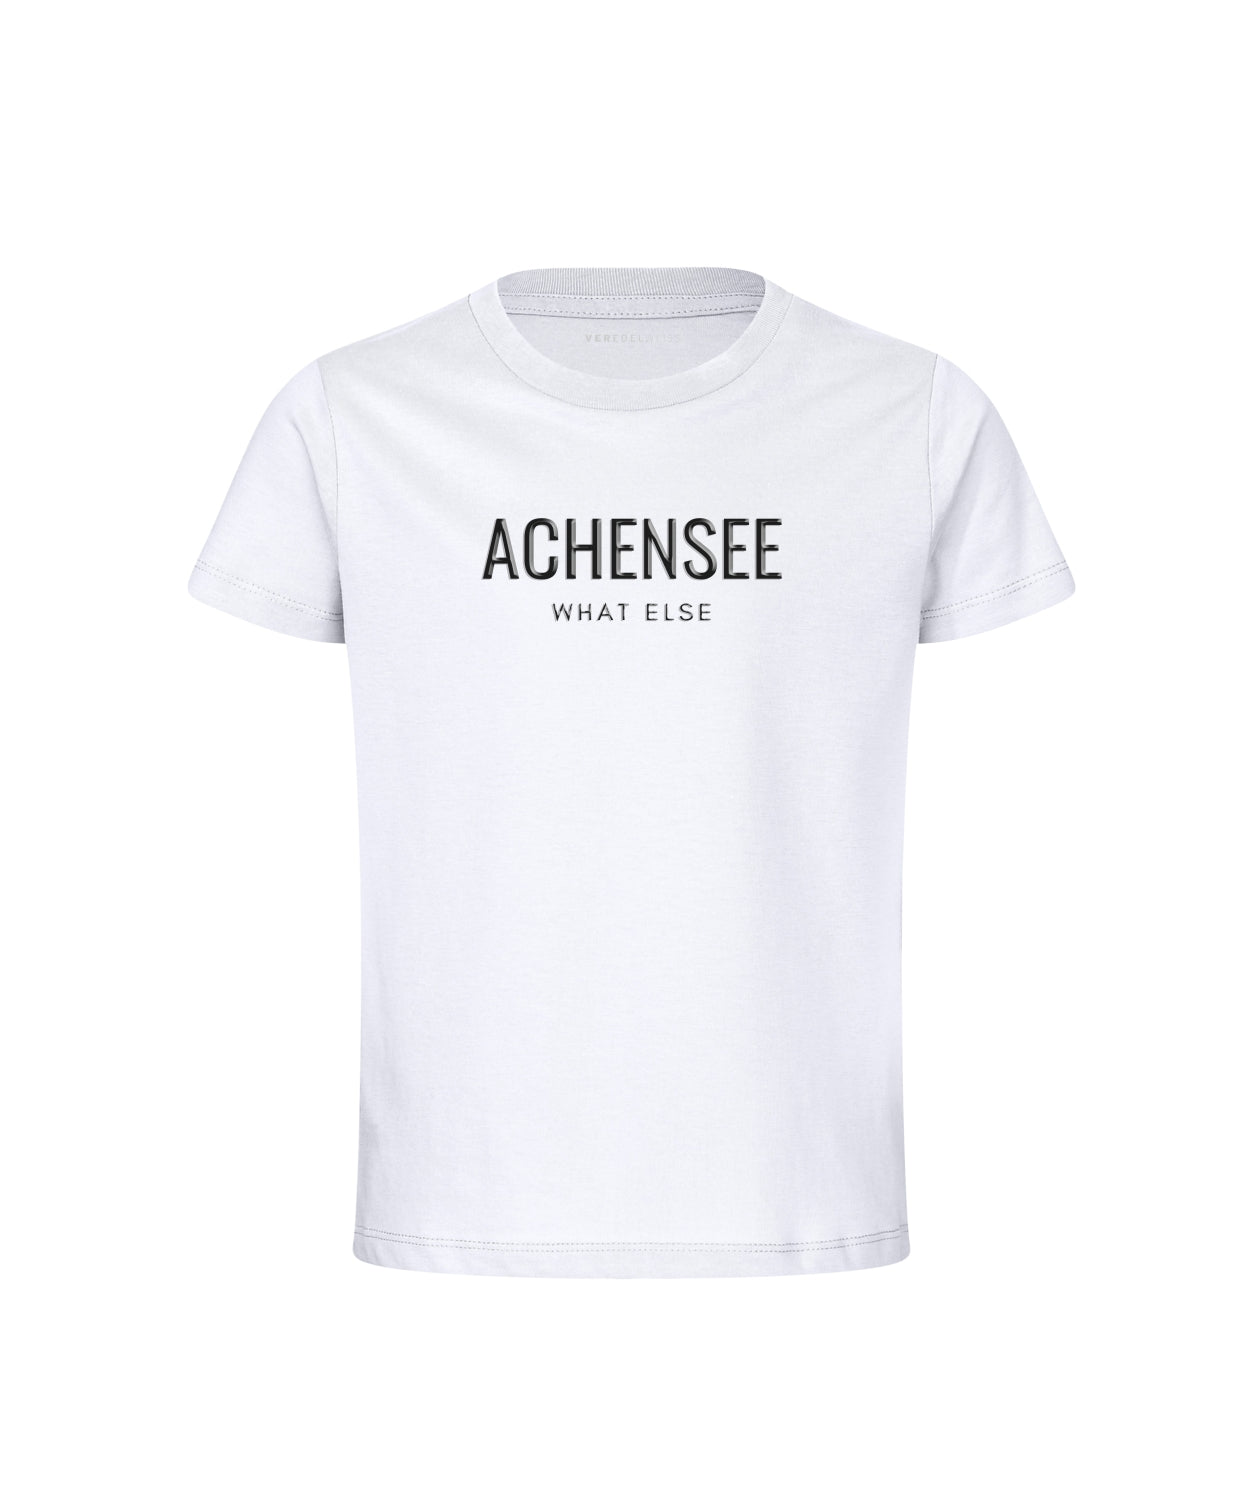 Achensee - What Else (Kinder) Achensee - What Else (Kinder)